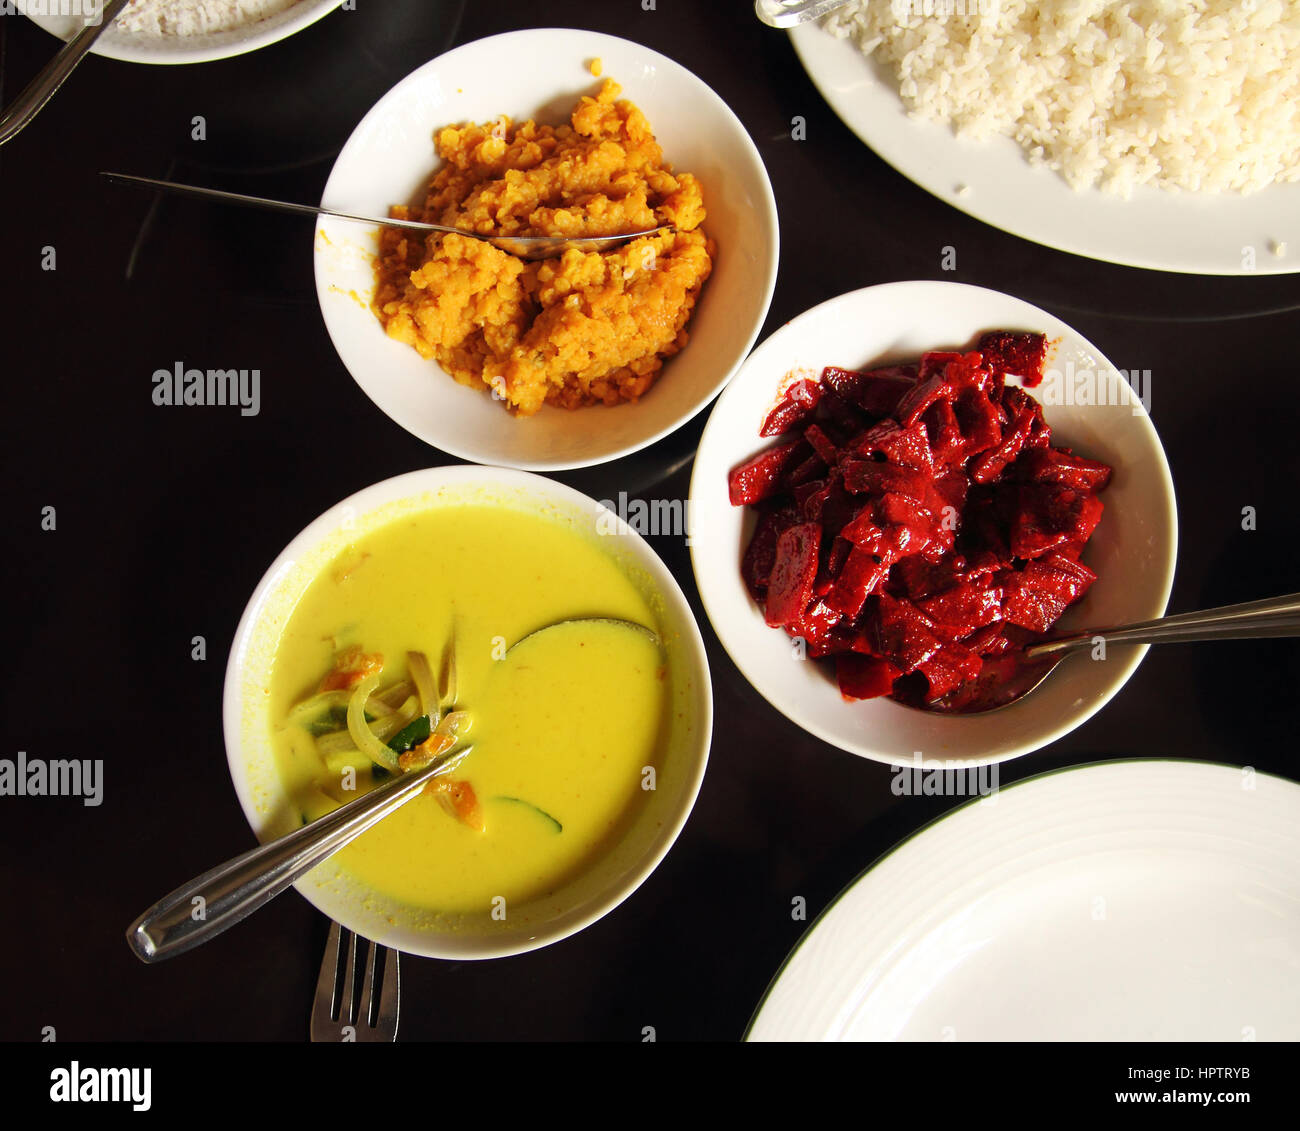 indisches Essen in Schüsseln auf Tisch Stockfoto